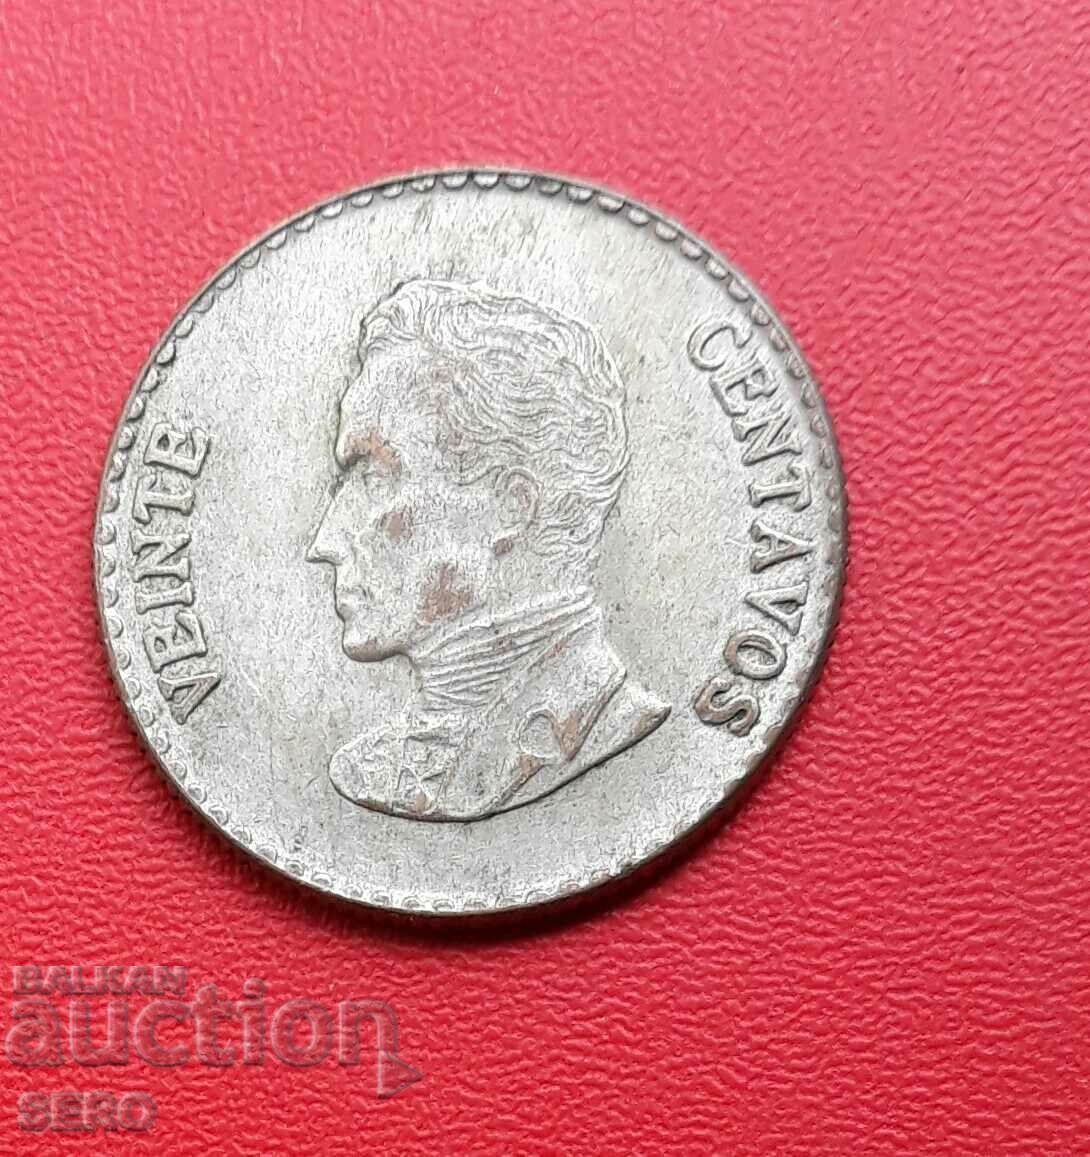 Κολομβία-20 centavos 1953-ασημένιο